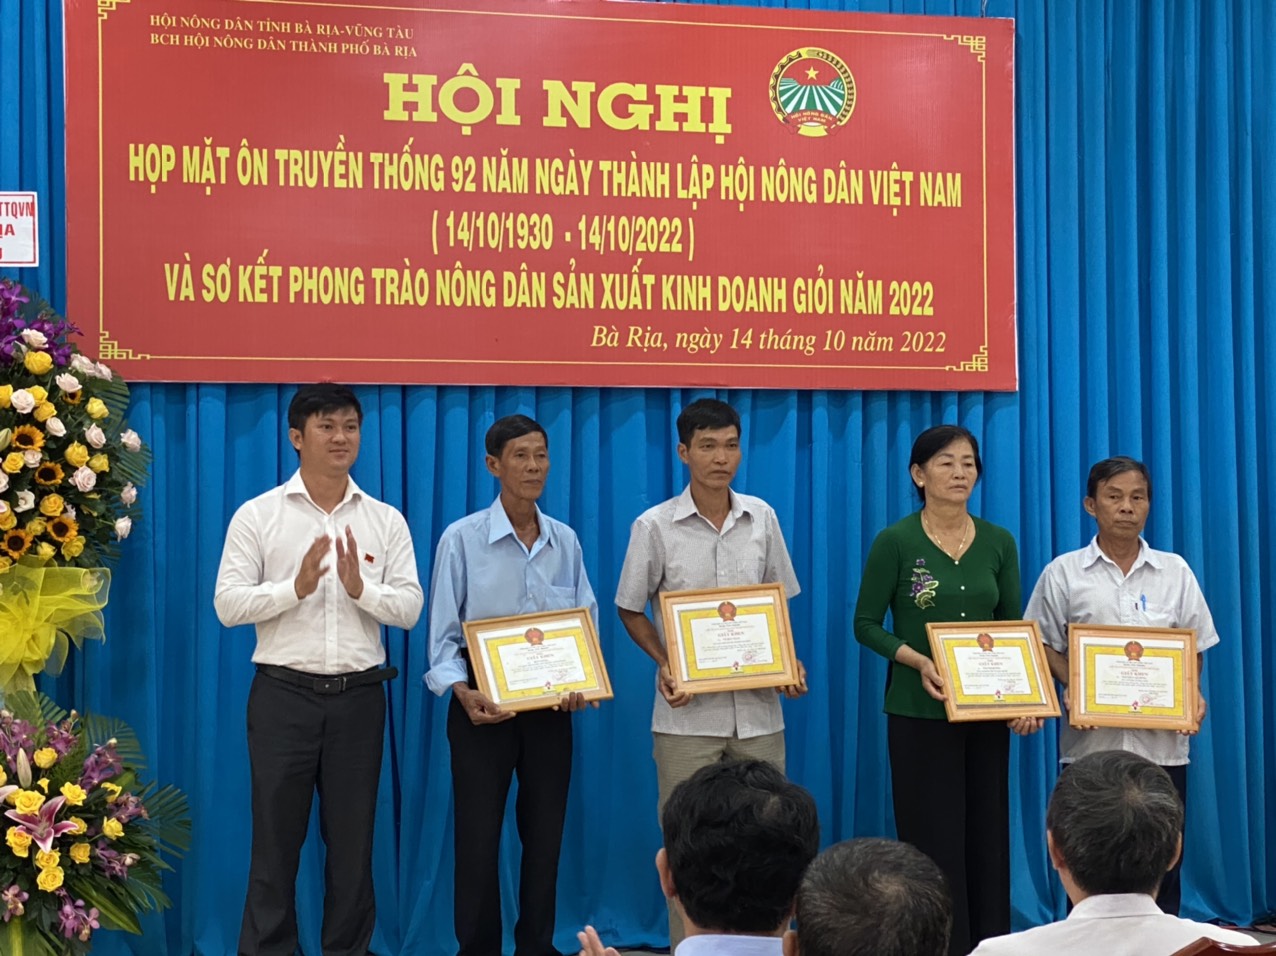 Ông Trần Thanh Tiến Đạt, Phó trưởng Ban dân vận Thành ủy Bà Rịa trao giấy khen cho các cá nhân.